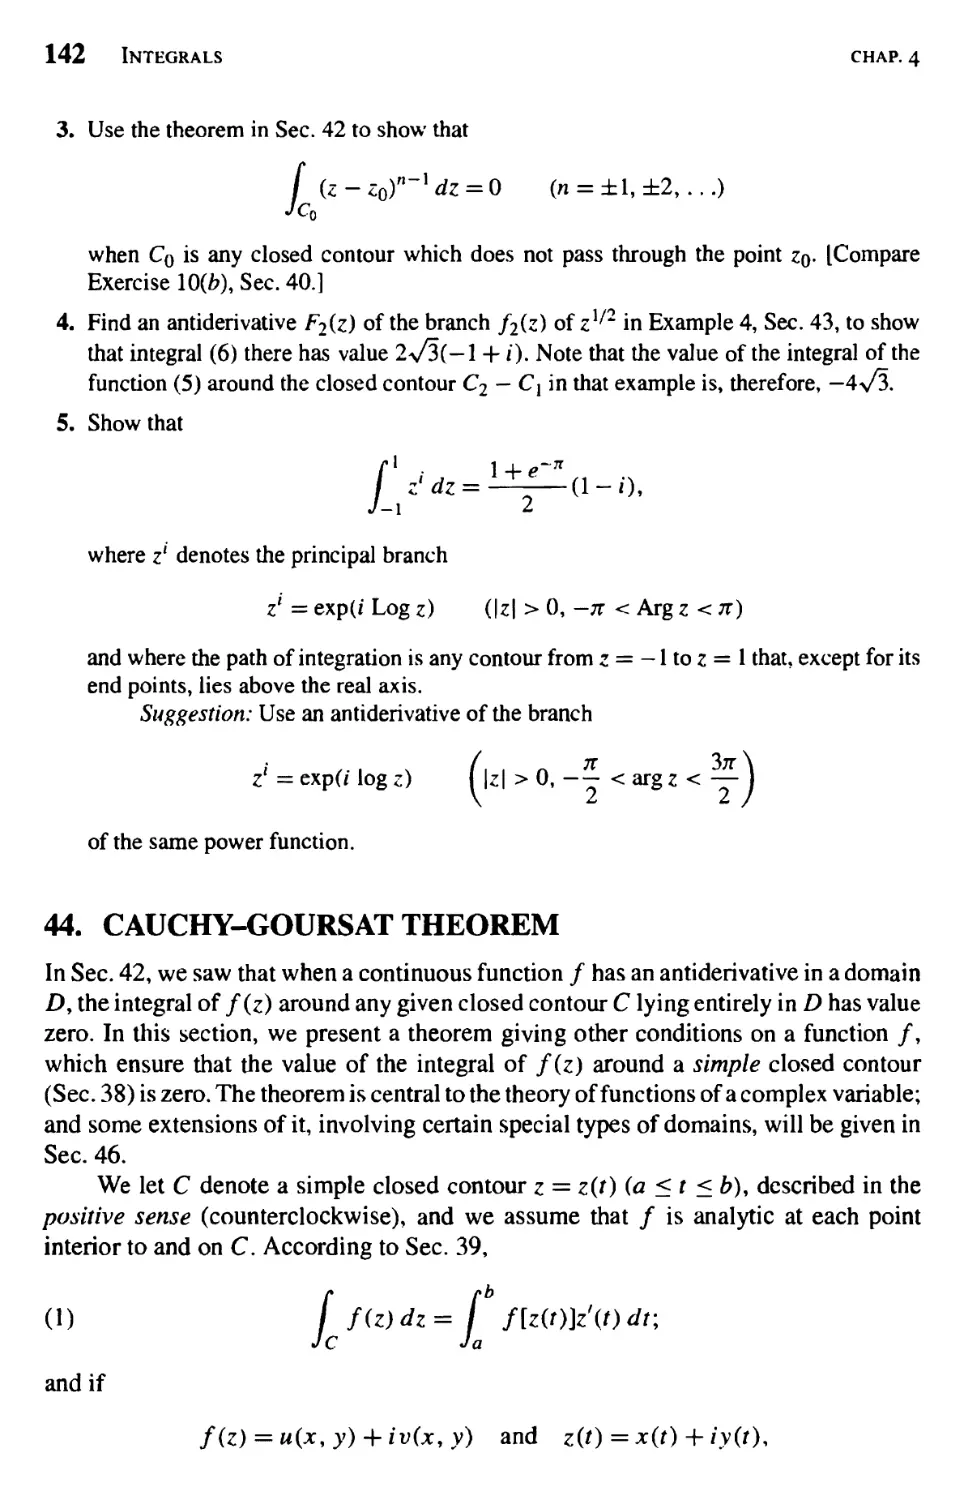 Cauchy-Goursat Theorem